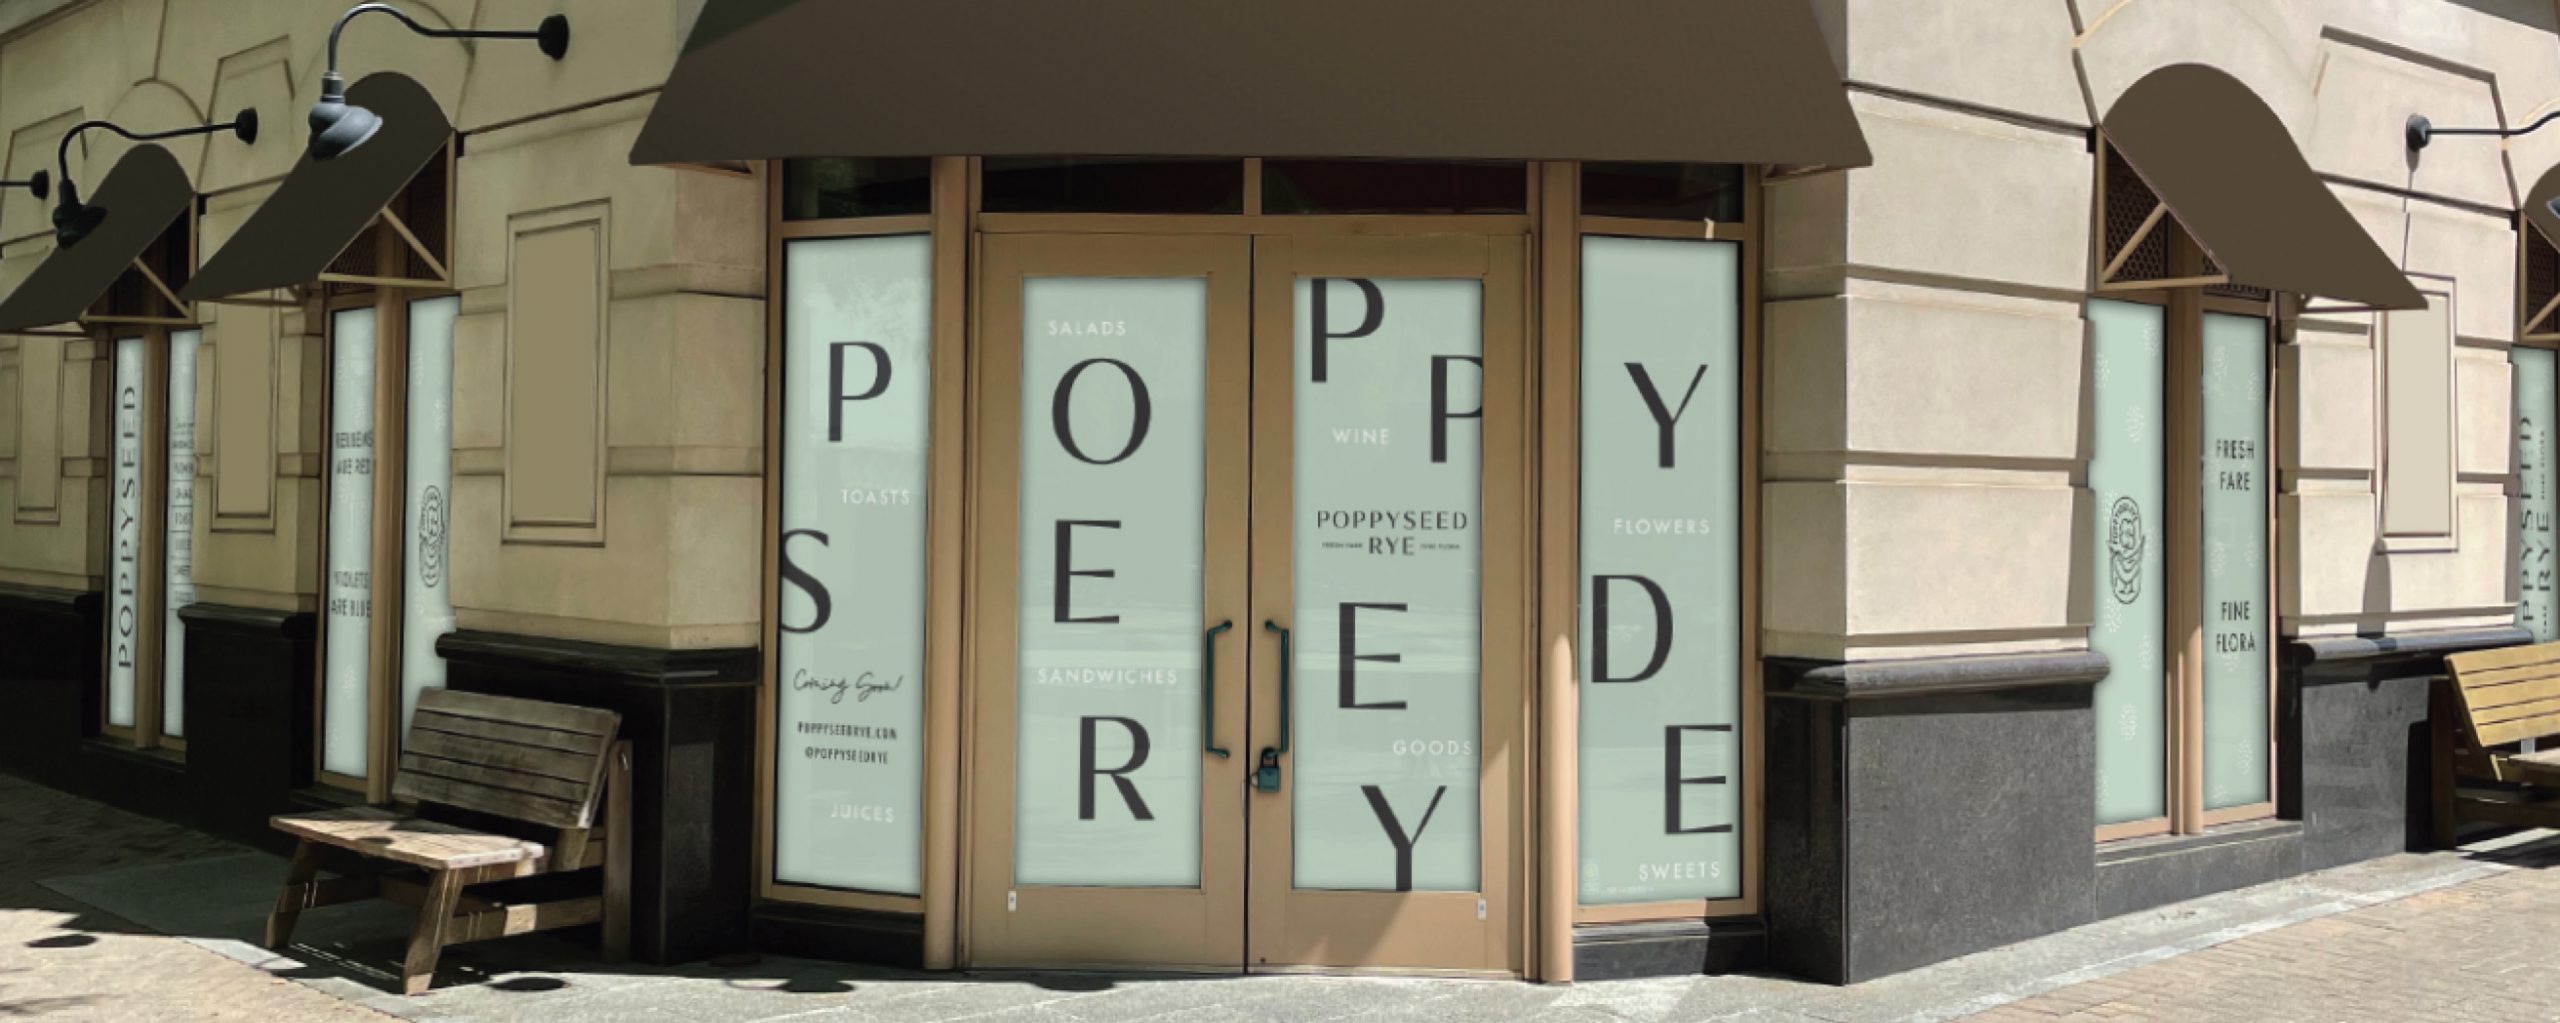 Poppyseed Rye storefront